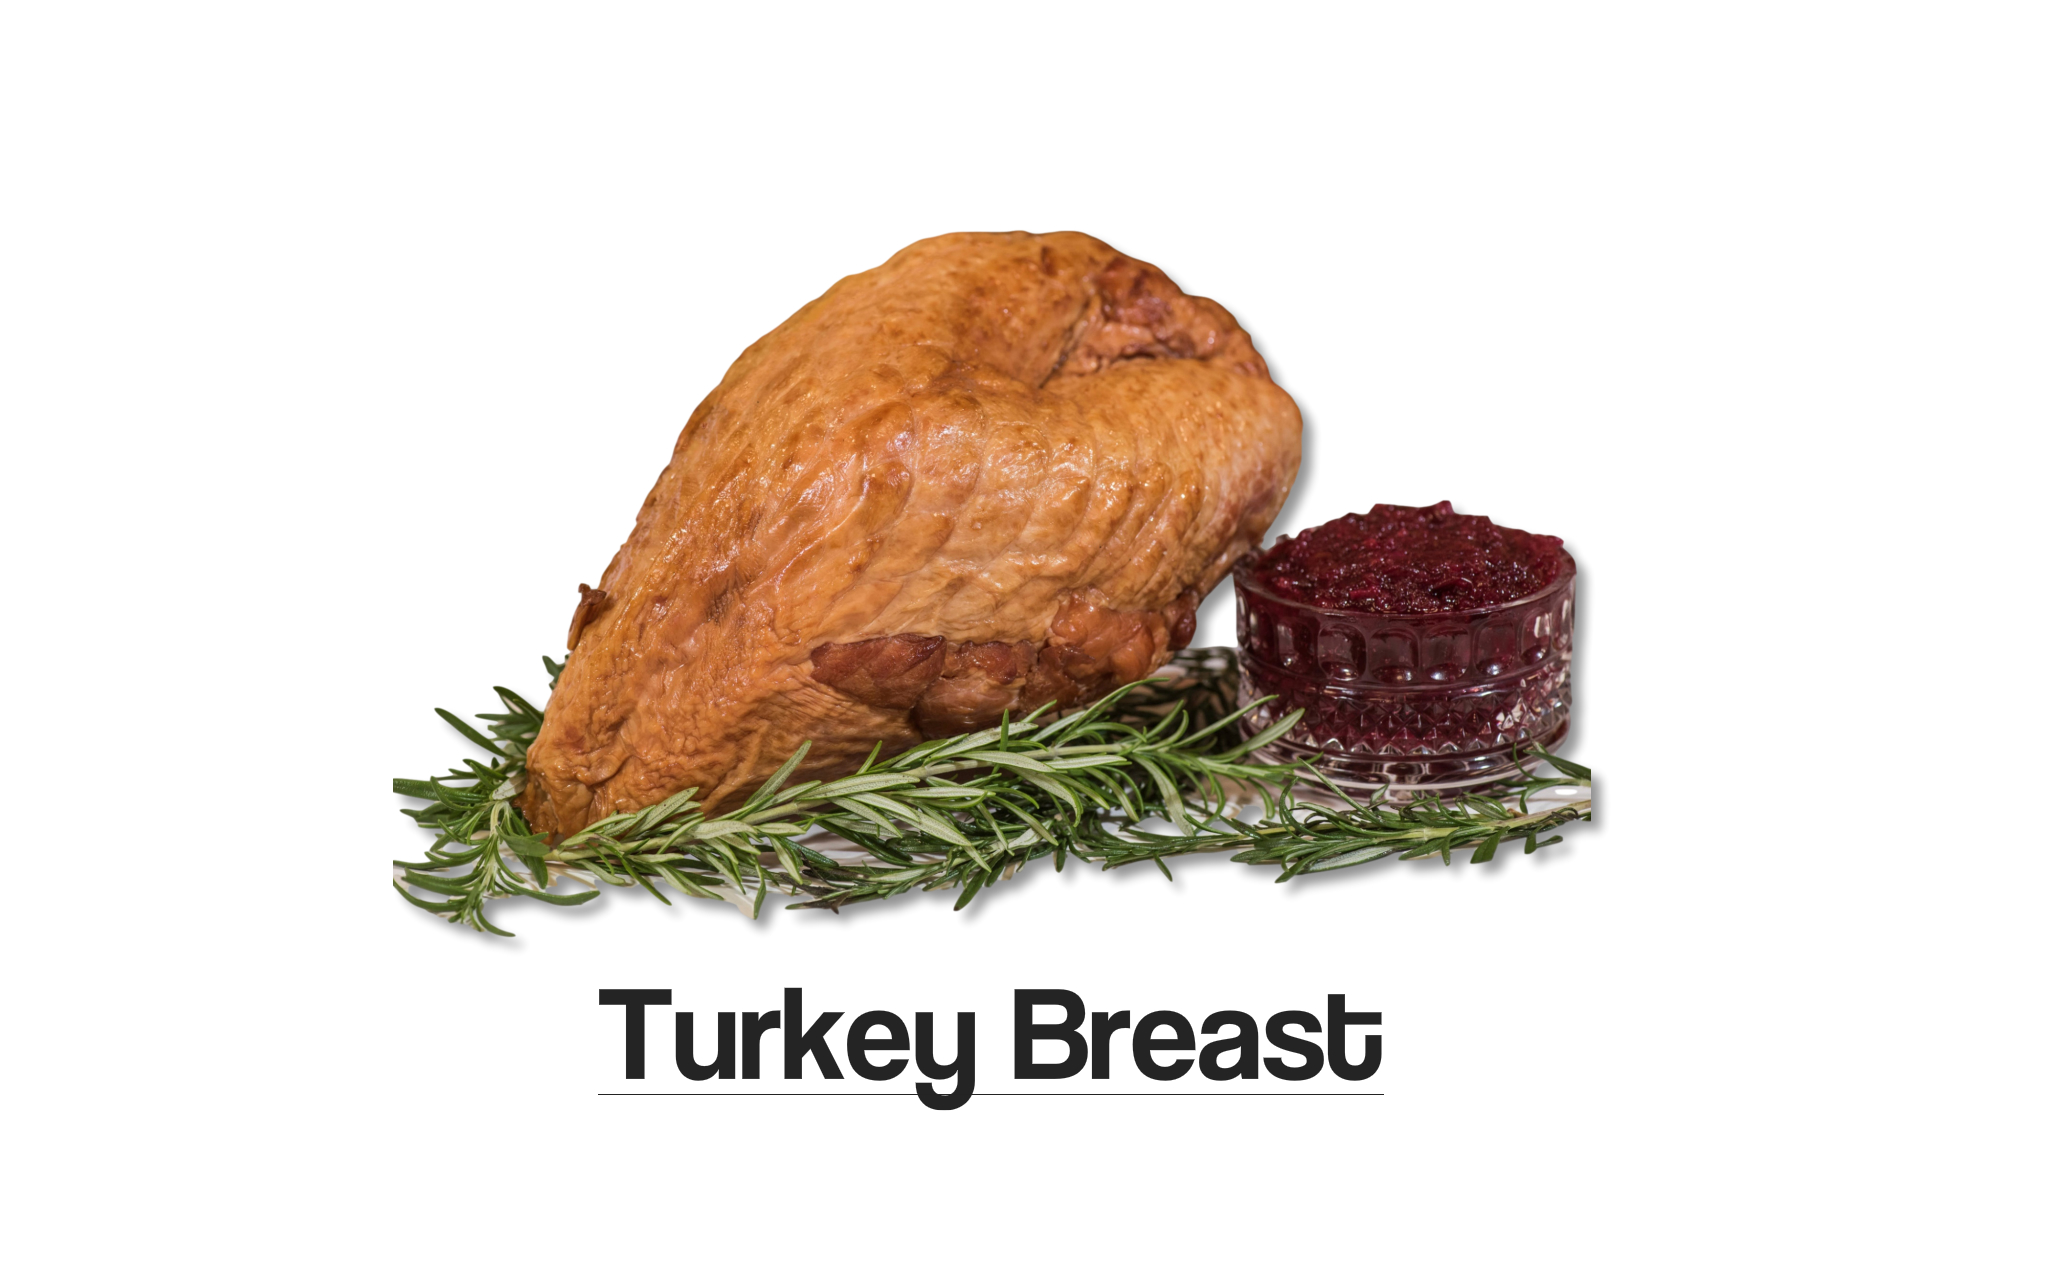 Turkey Breast Whiteback